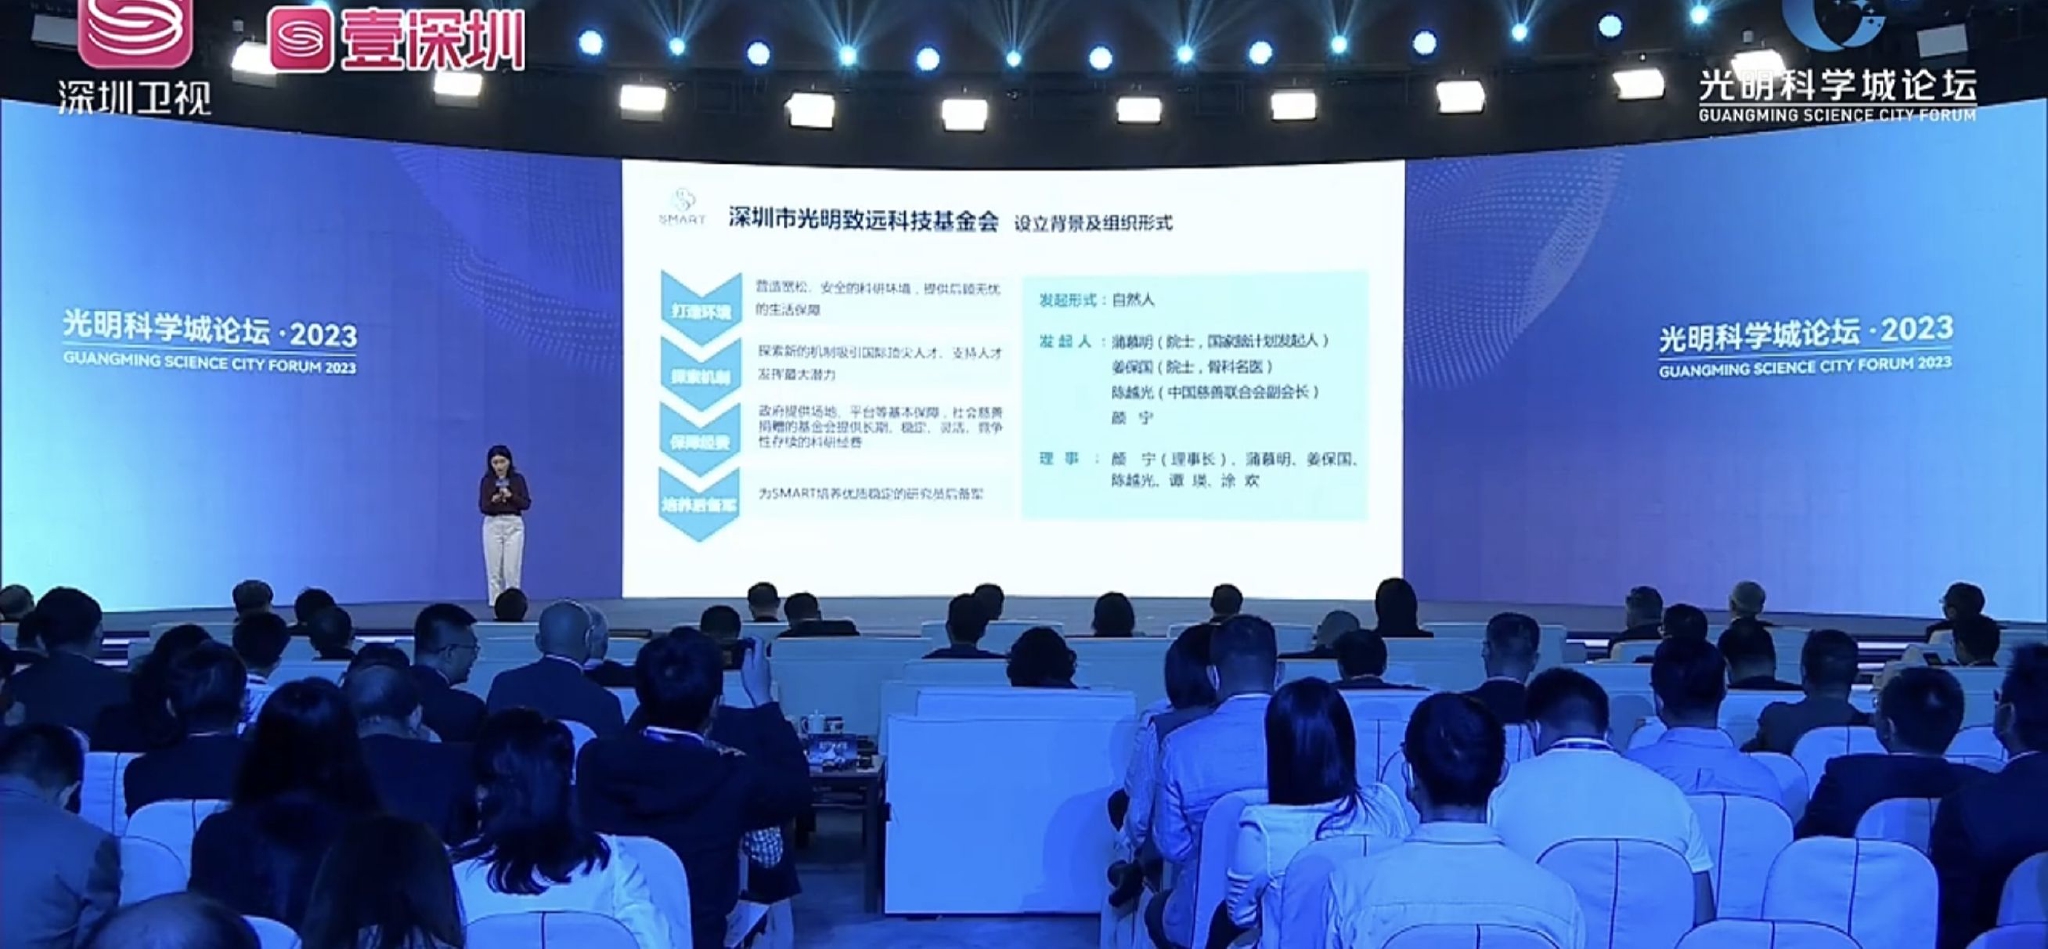 深圳市光明致远科技基金会正式揭牌 颜宁担任理事